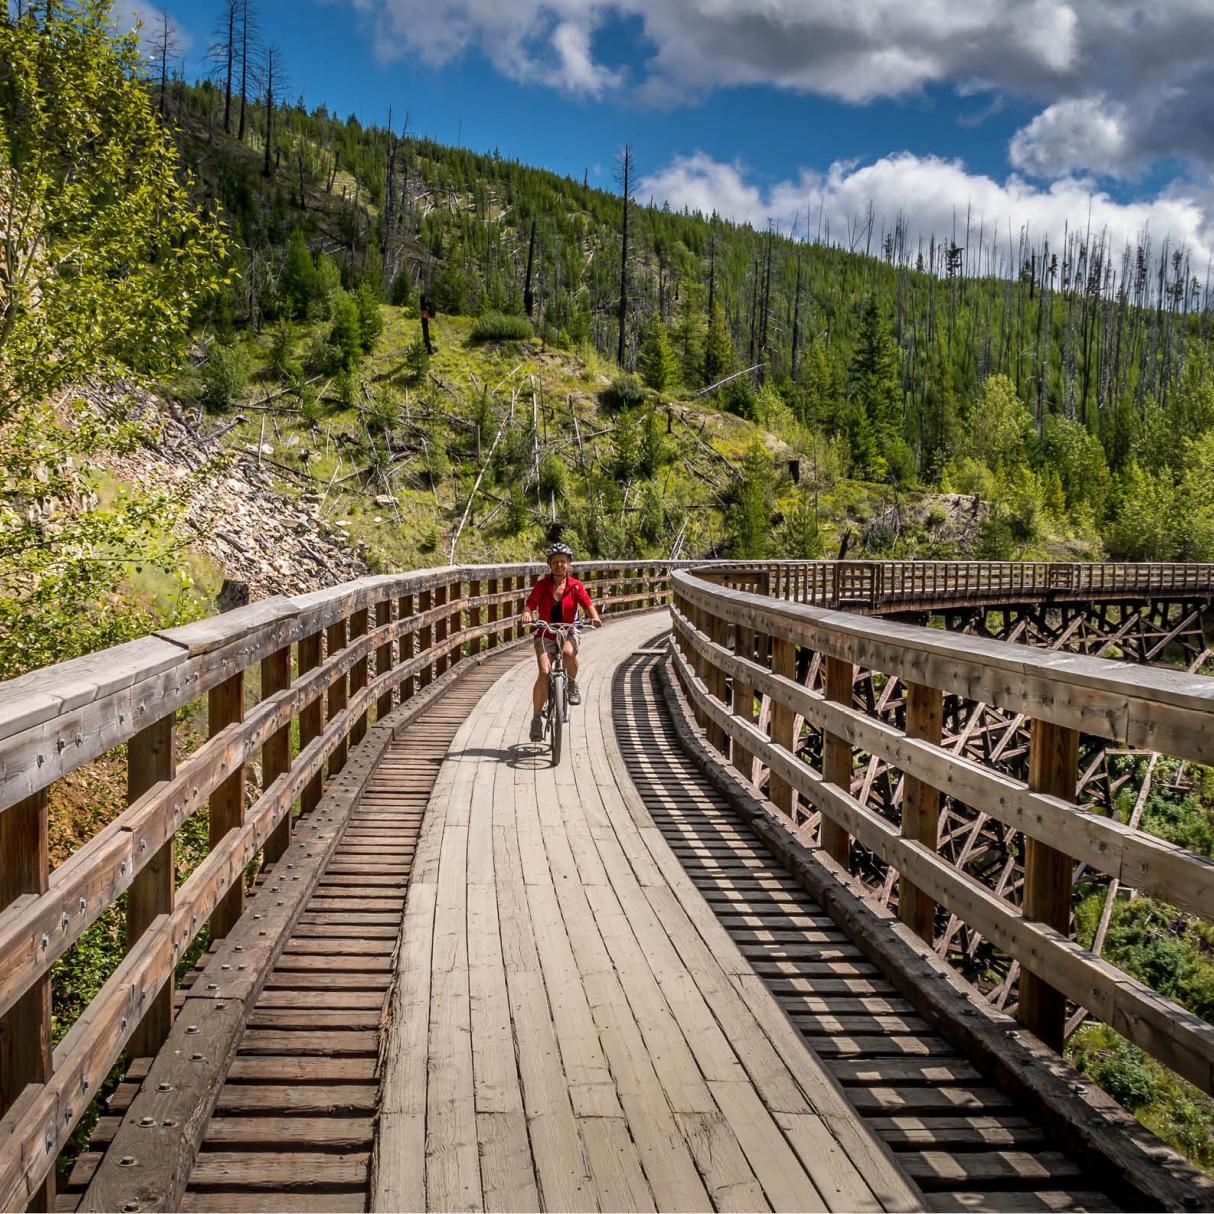 Wooden Trestle Bridges of the Kettle Valley rail trail near Kelowna